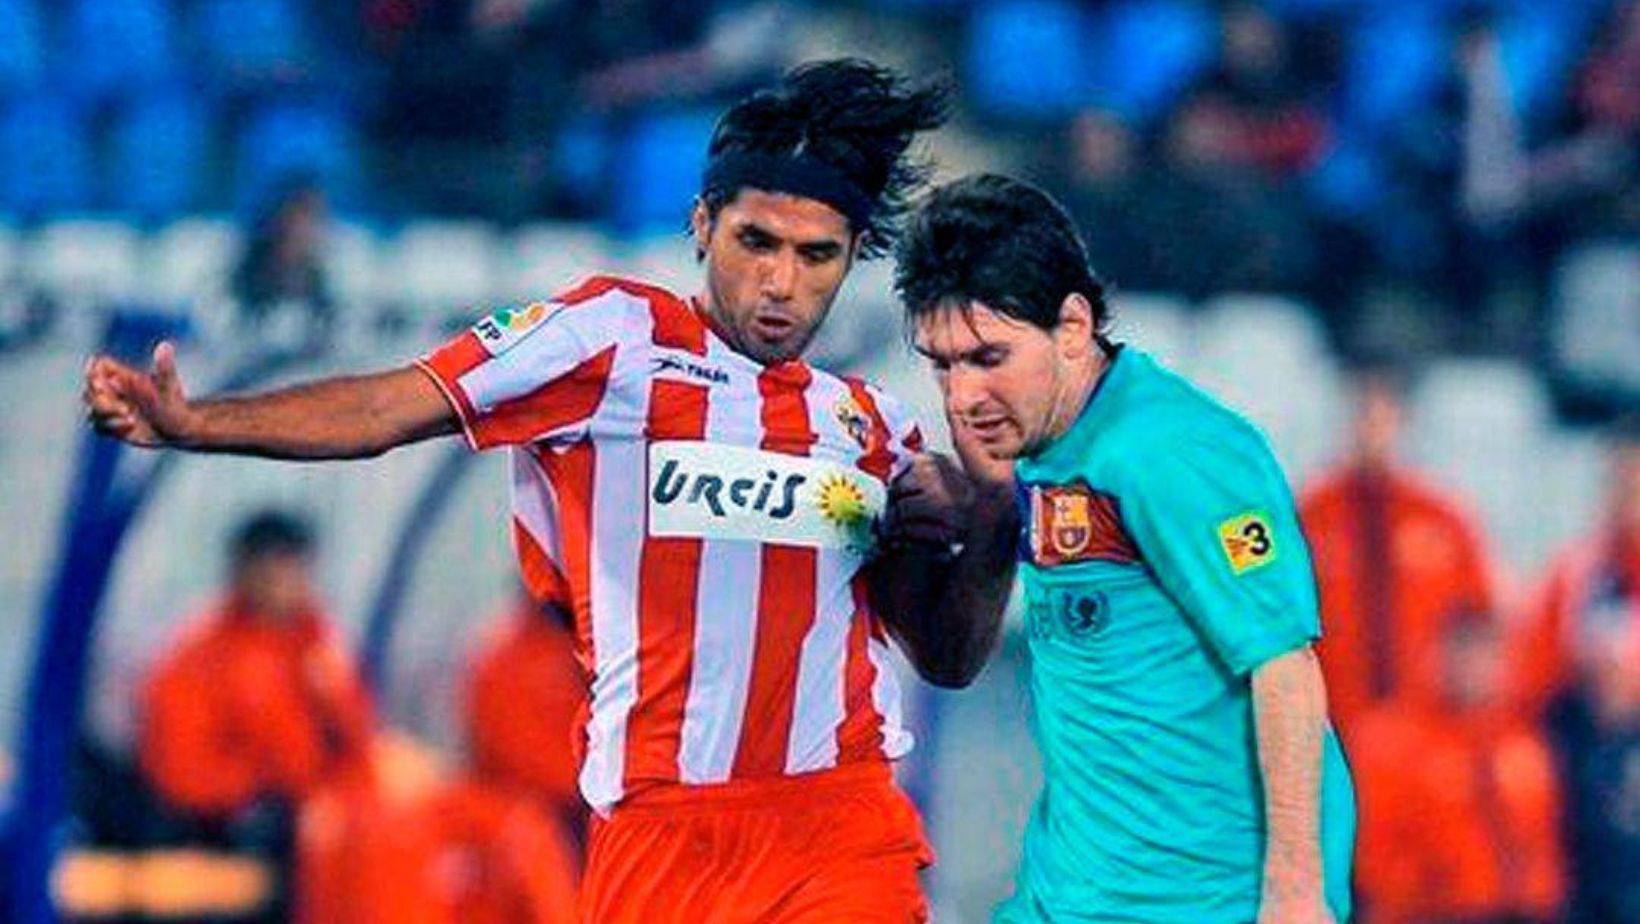 Fabián Vargas y Messi. En relación con historia del 2010.